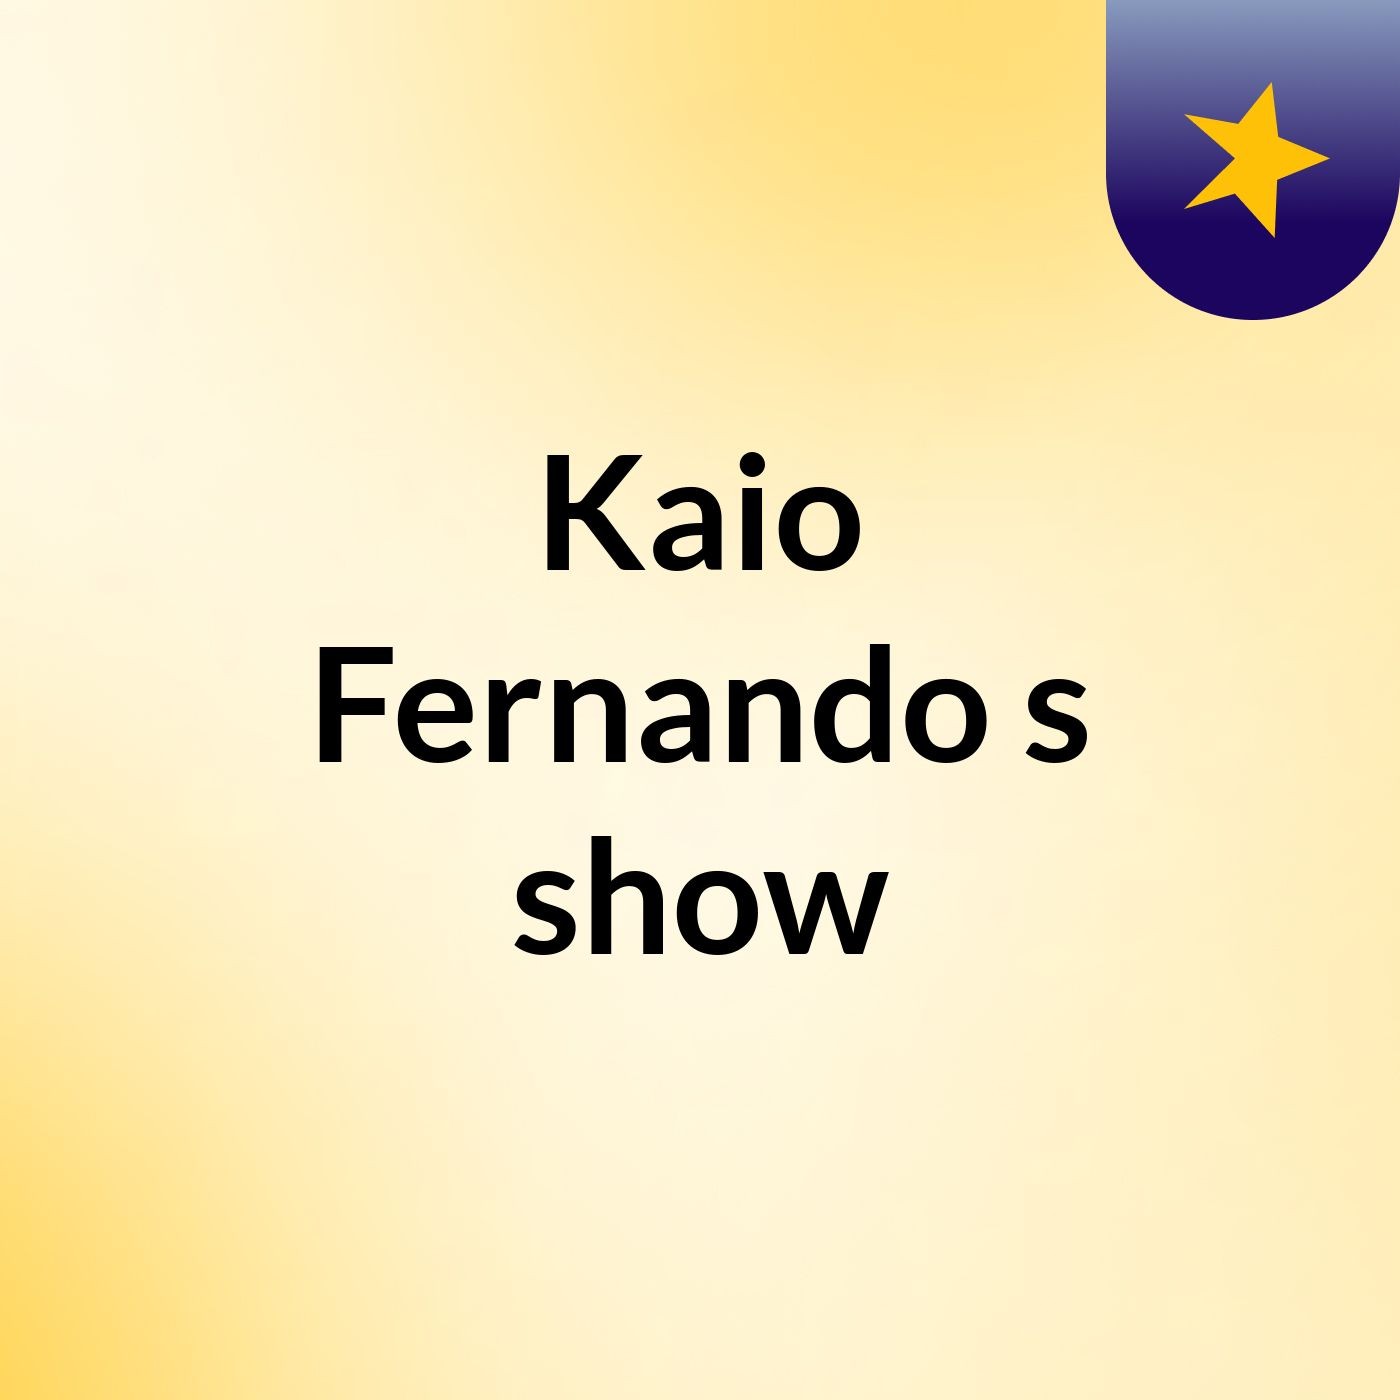 Kaio Fernando's show